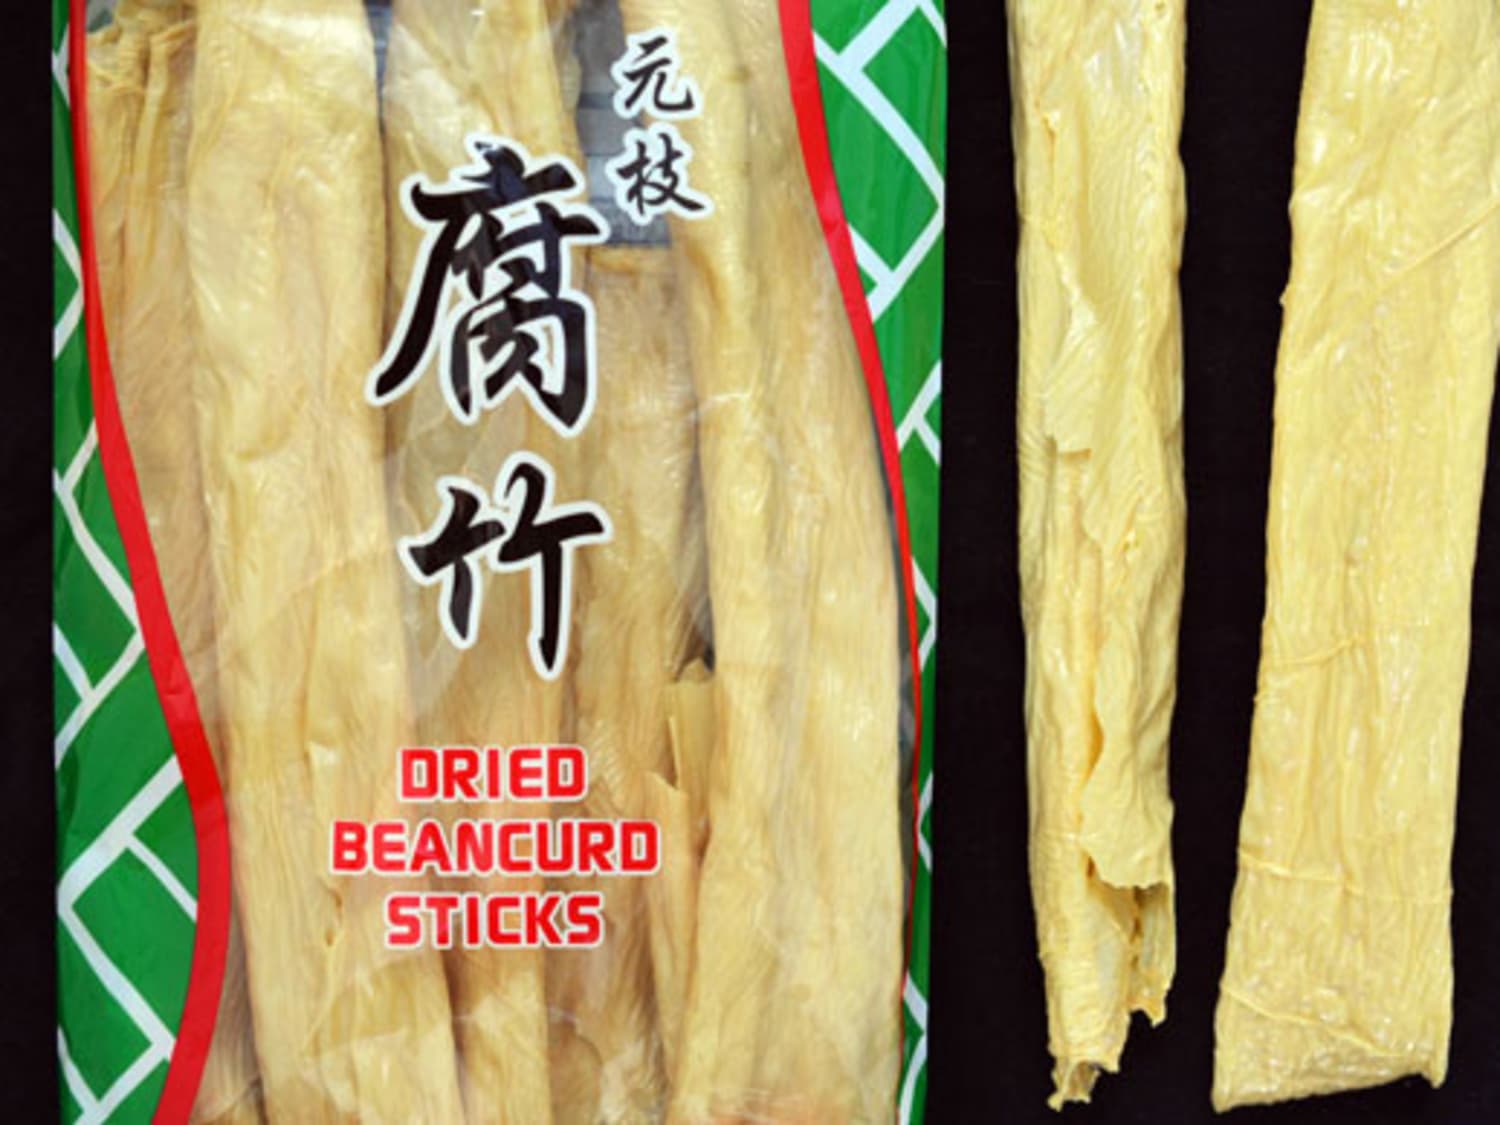 Dried bean curd